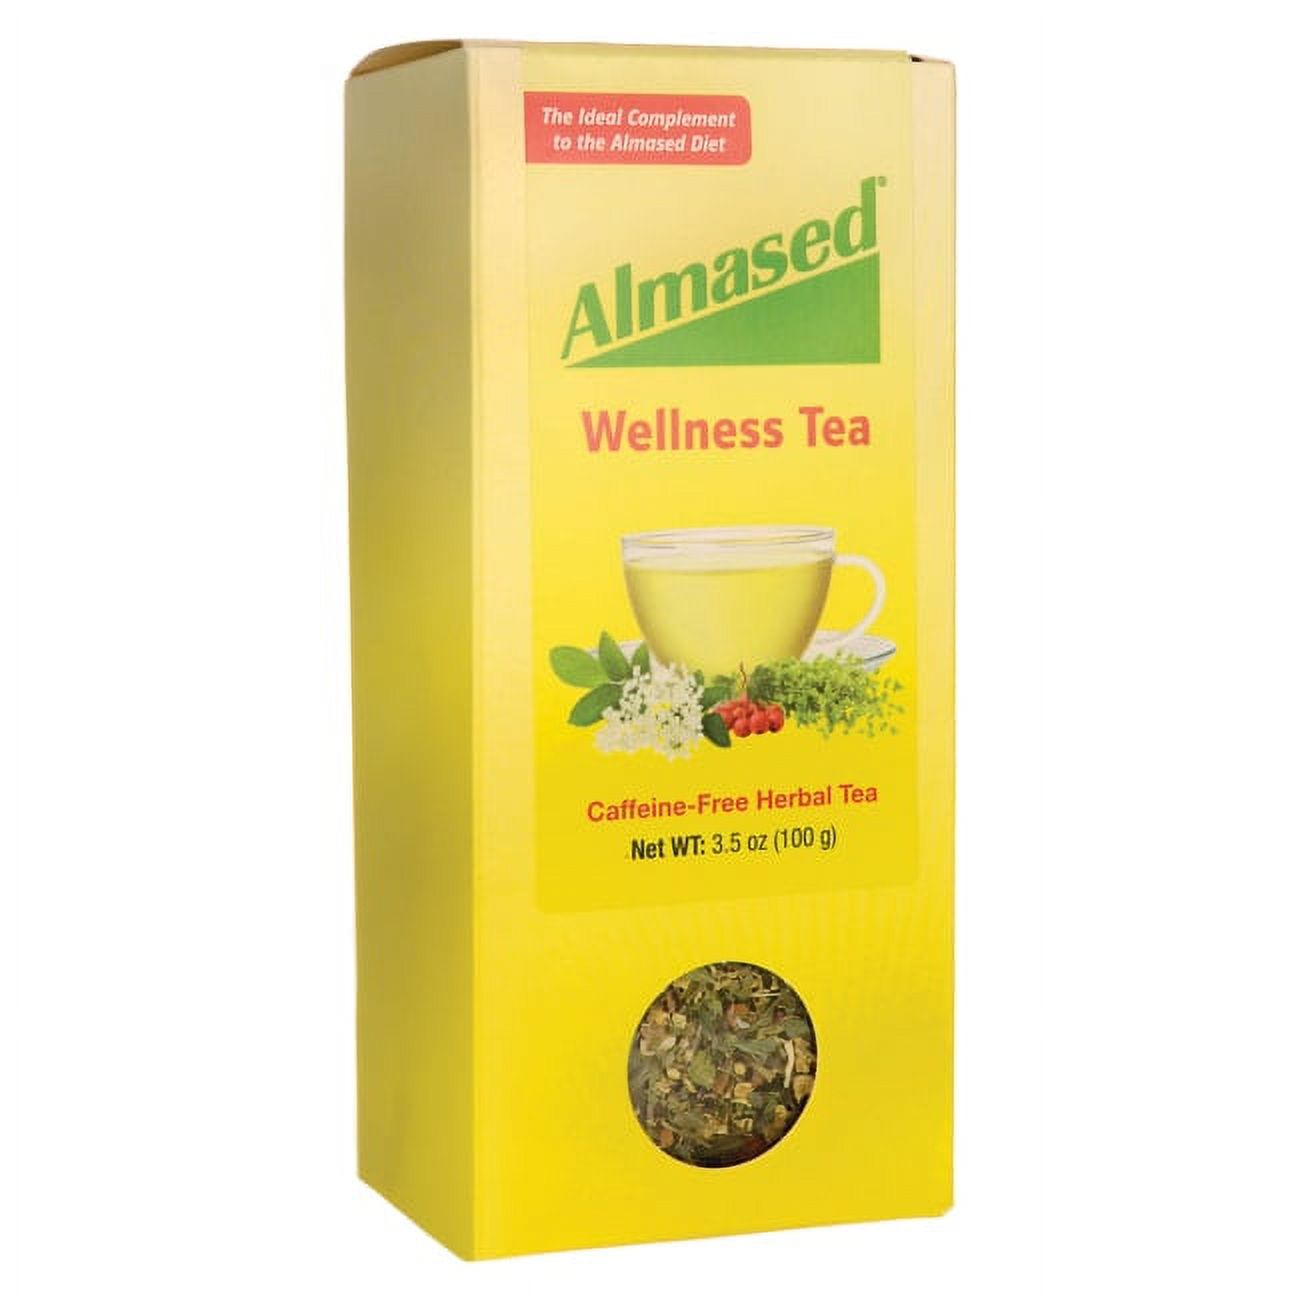 Almased Wellness Tea, Caffeine-Free, 3.5 oz - image 1 of 5